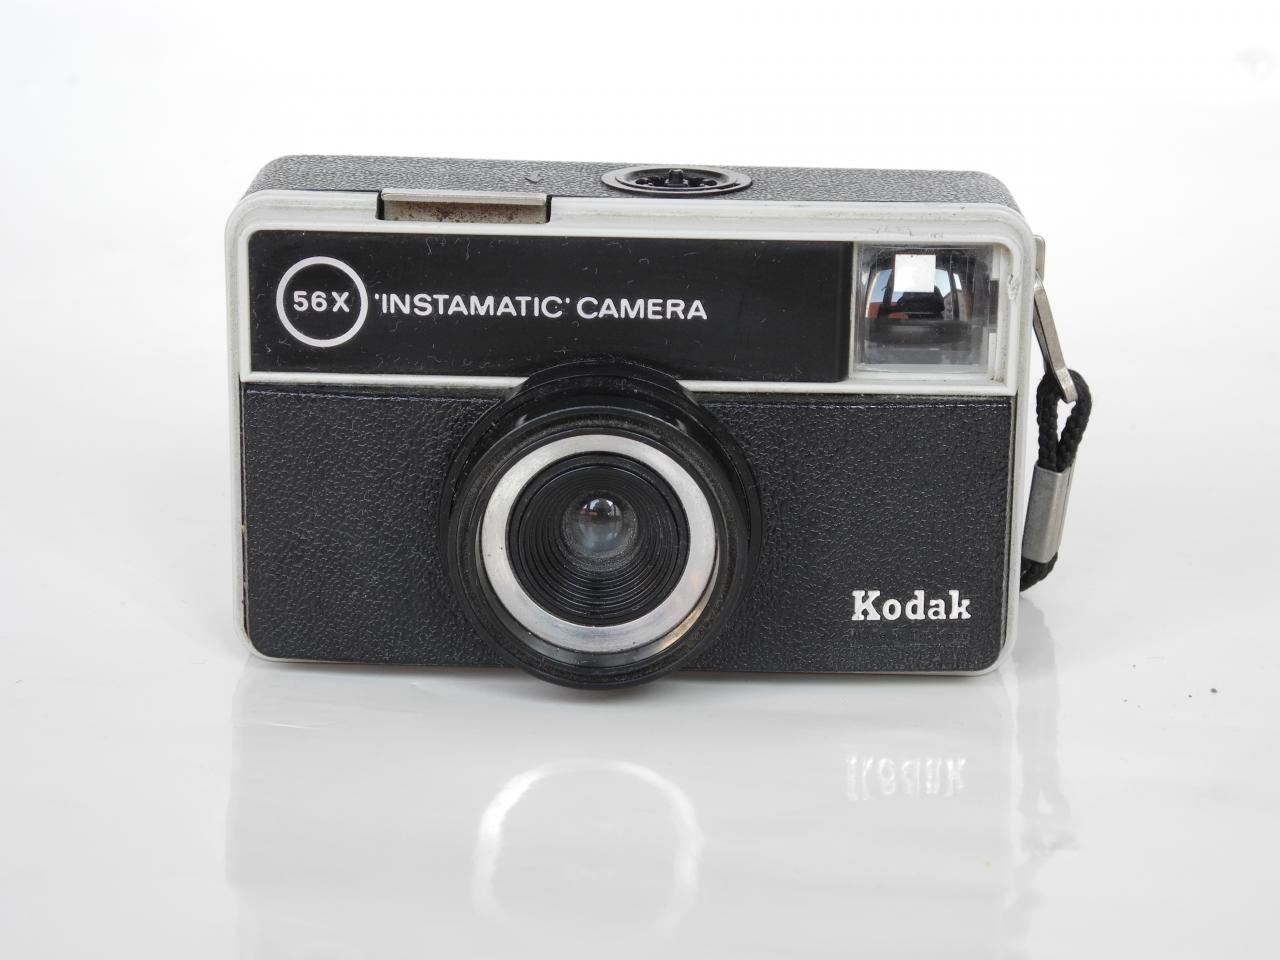 Kodak 56x